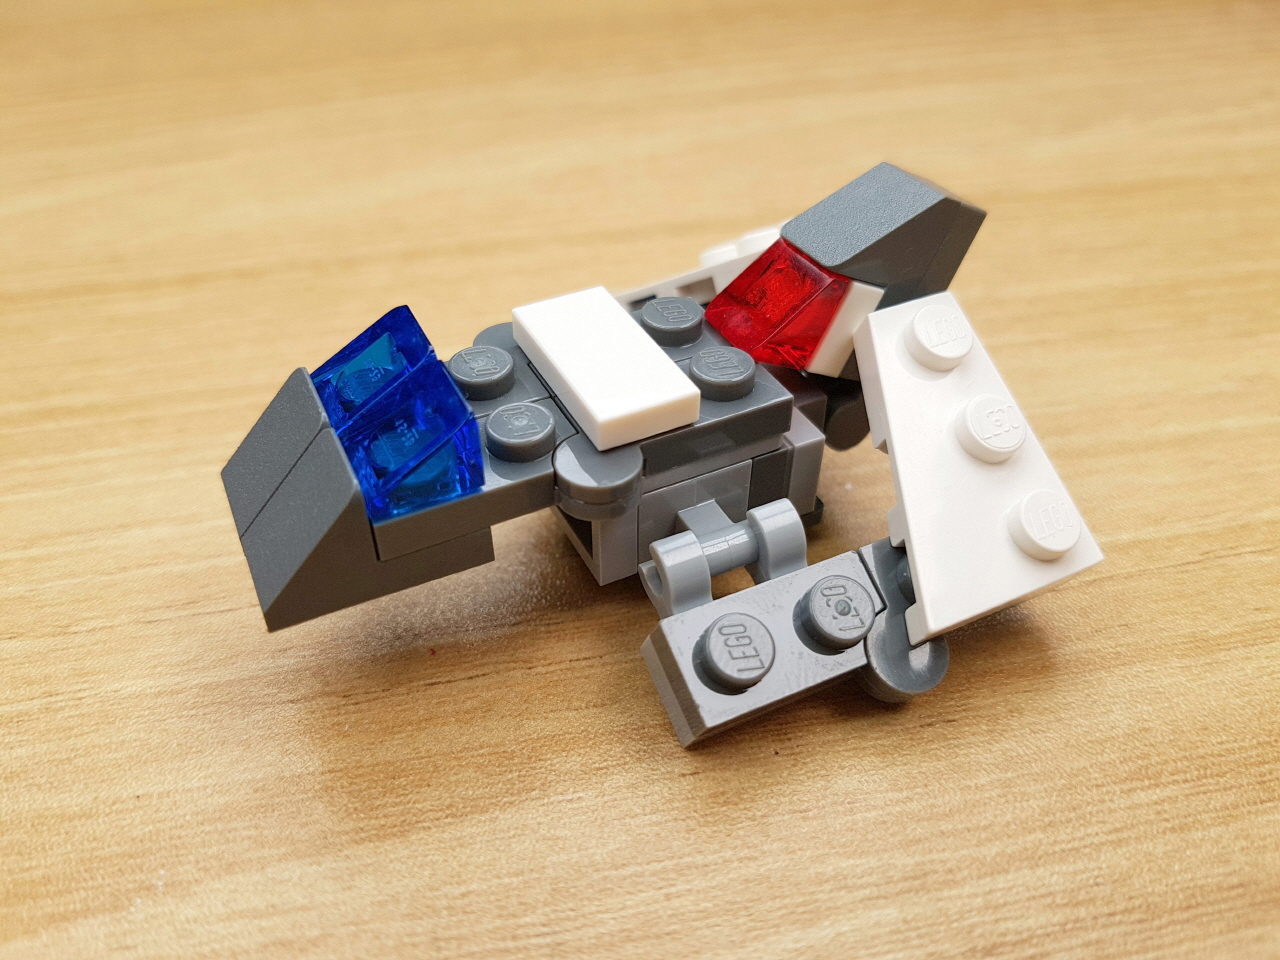 Condoljet - Flight Jet & Condol Transformer Robot
 1 - transformation,transformer,LEGO transformer